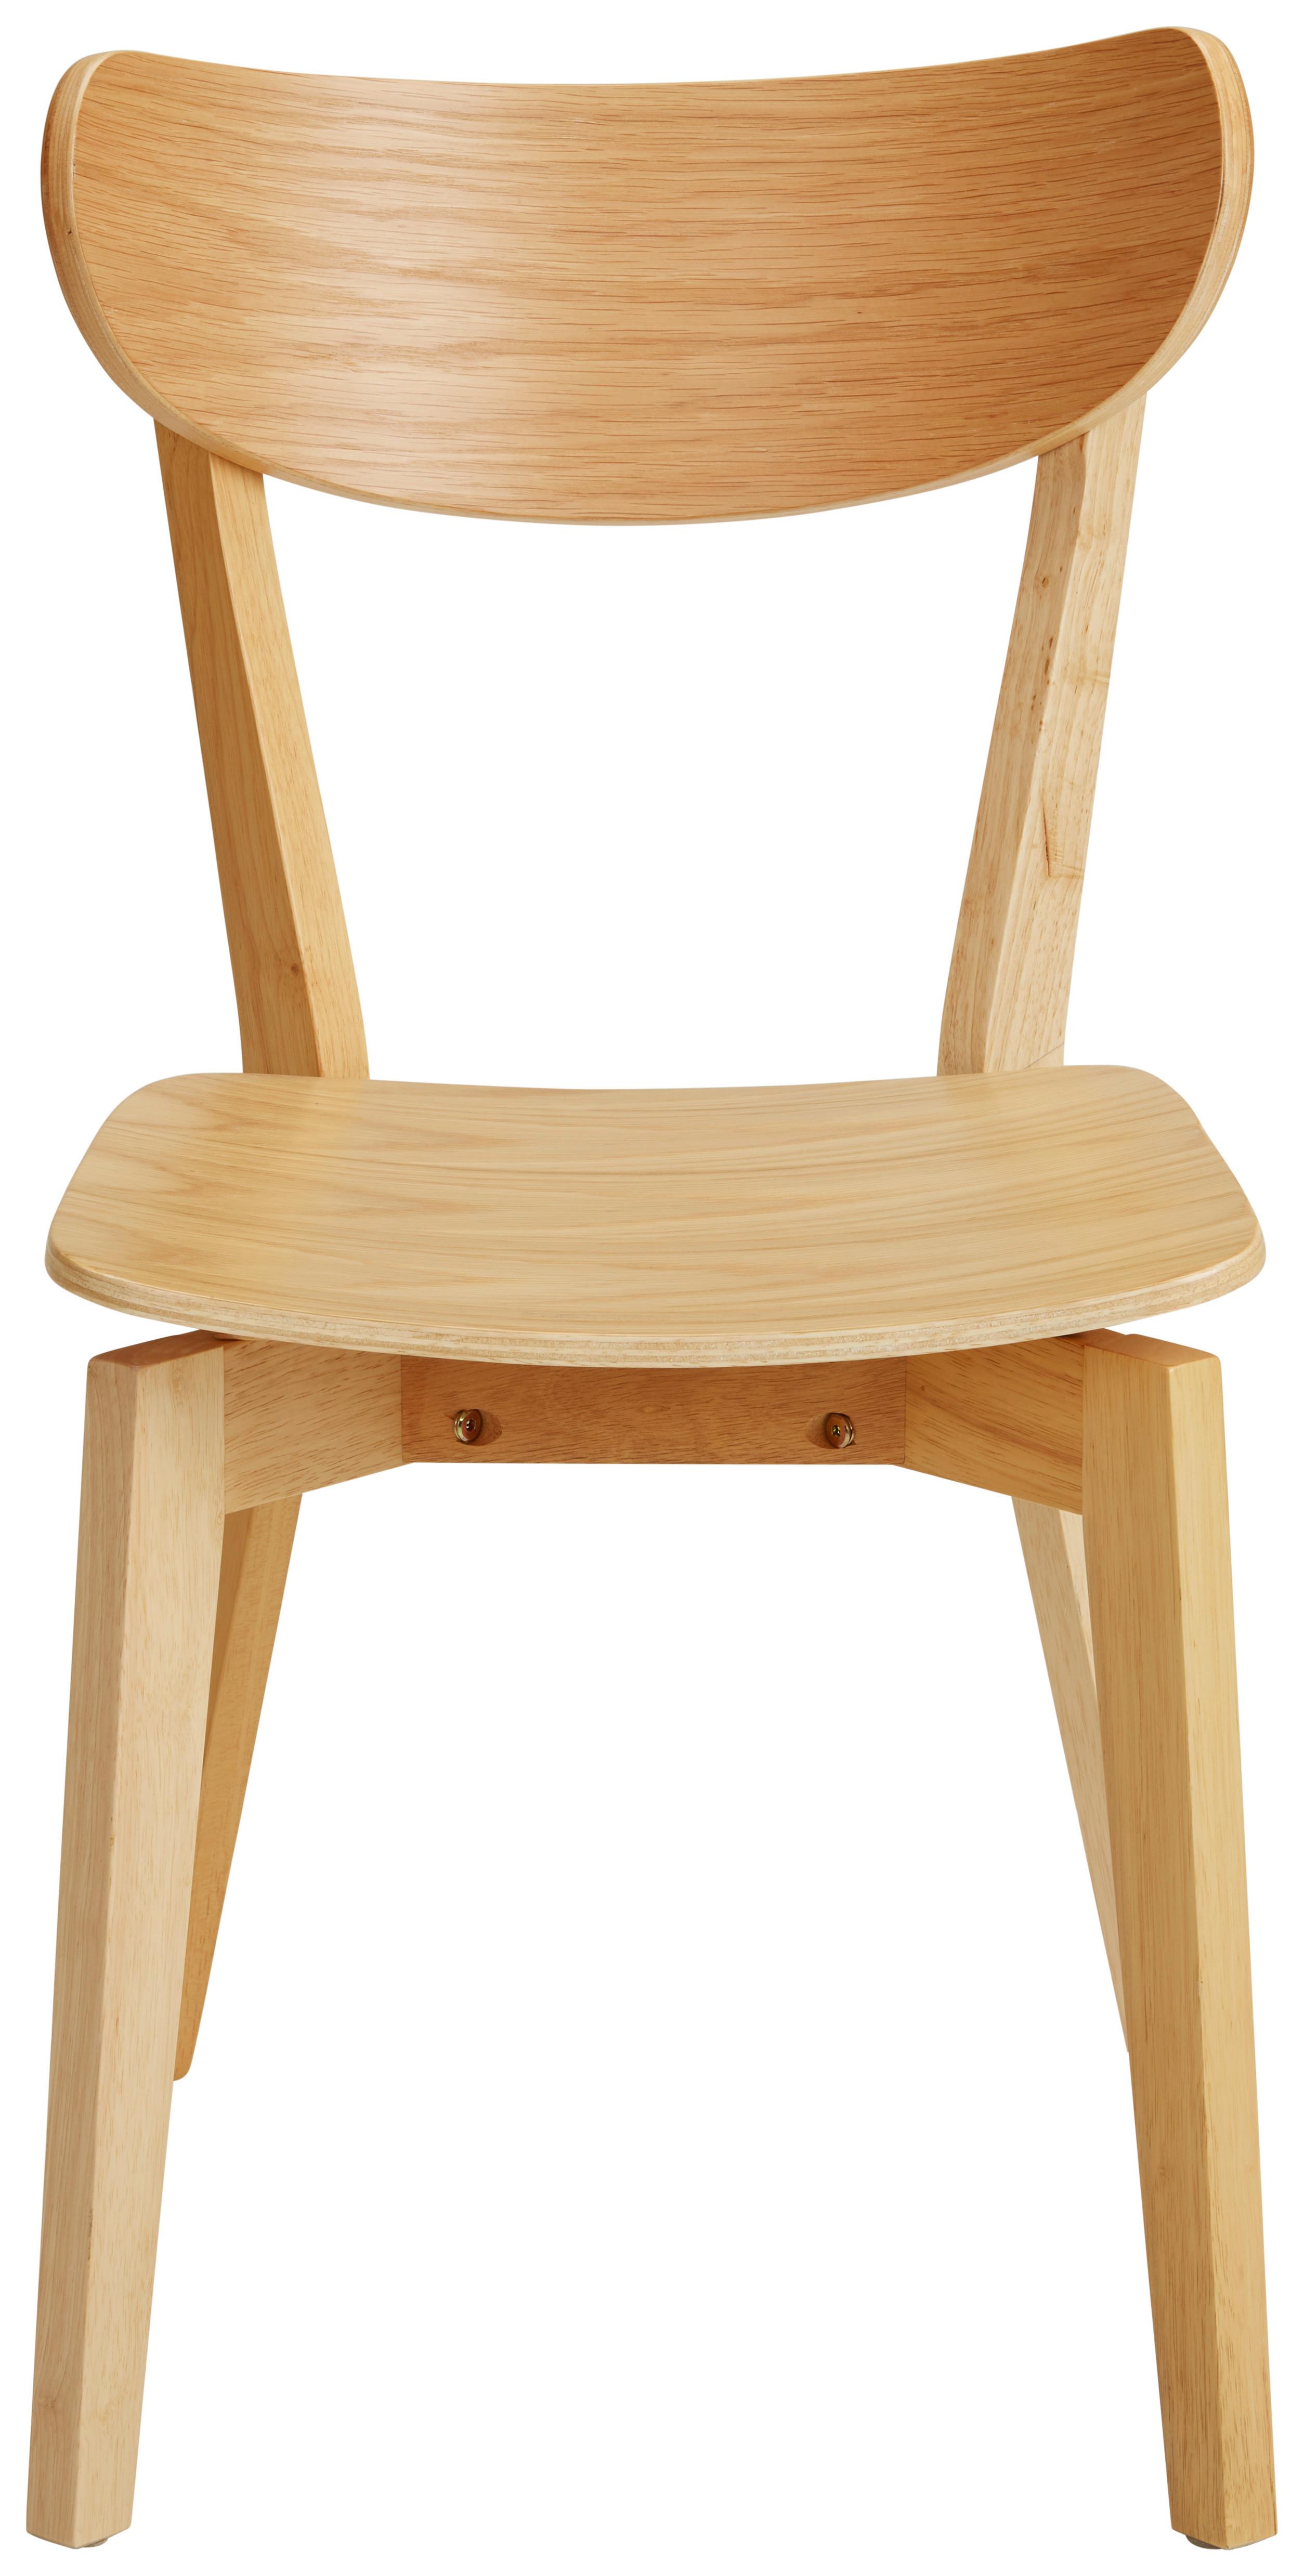 Jídelní Židle Roxby Dub Morený - barvy dubu, Lifestyle, dřevo (45/78/55cm) - Modern Living